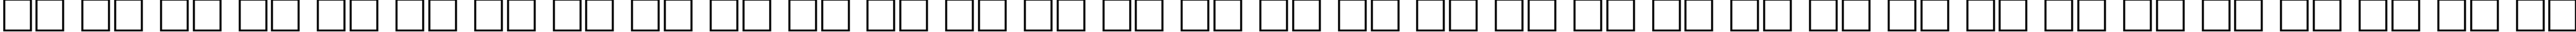 Пример написания русского алфавита шрифтом FreeSet90b